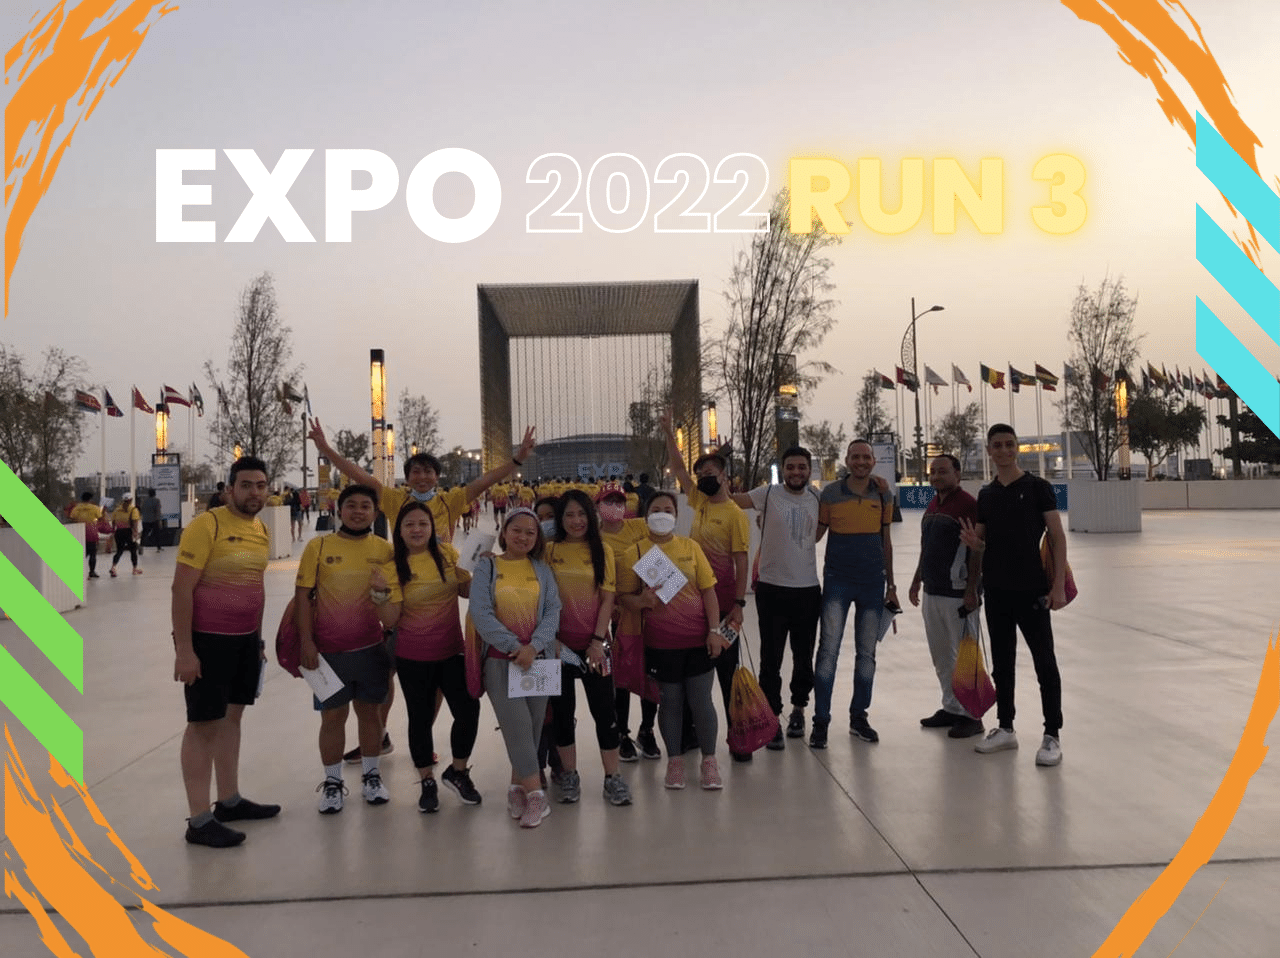 Expo Runner 2022